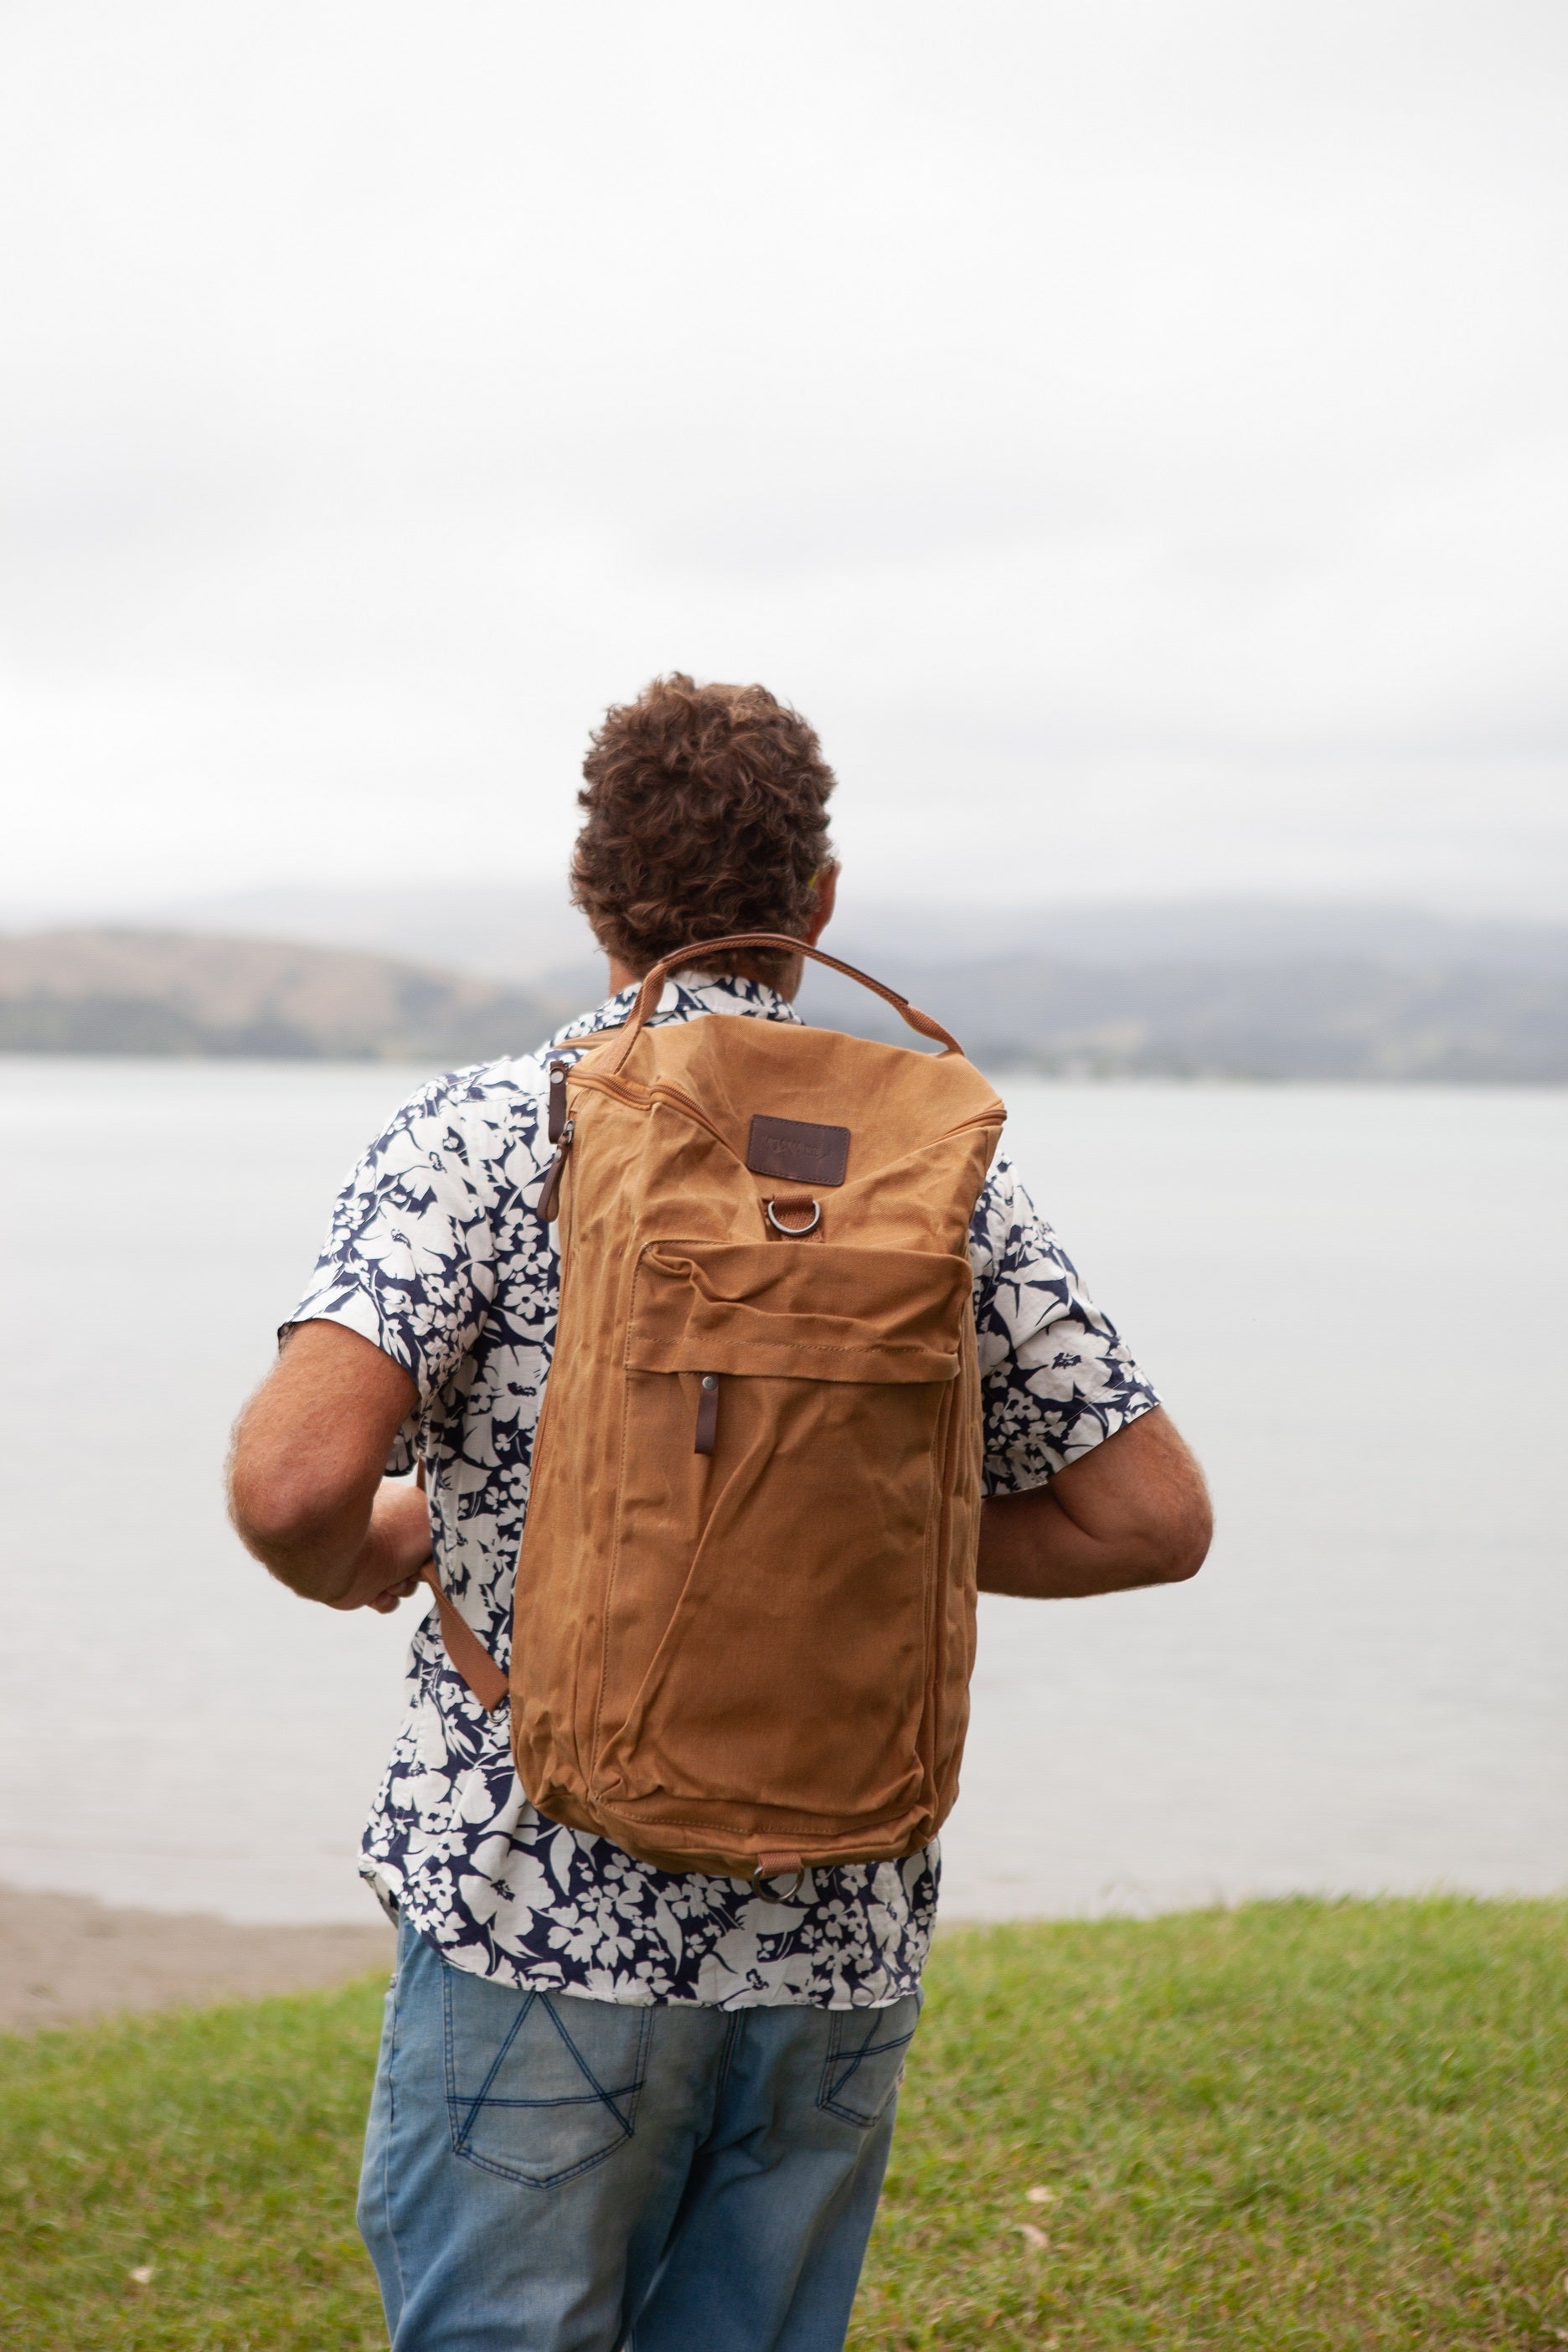 The Twizel Backpack - Waxed Tan | Moana Road Online | Avisons NZ